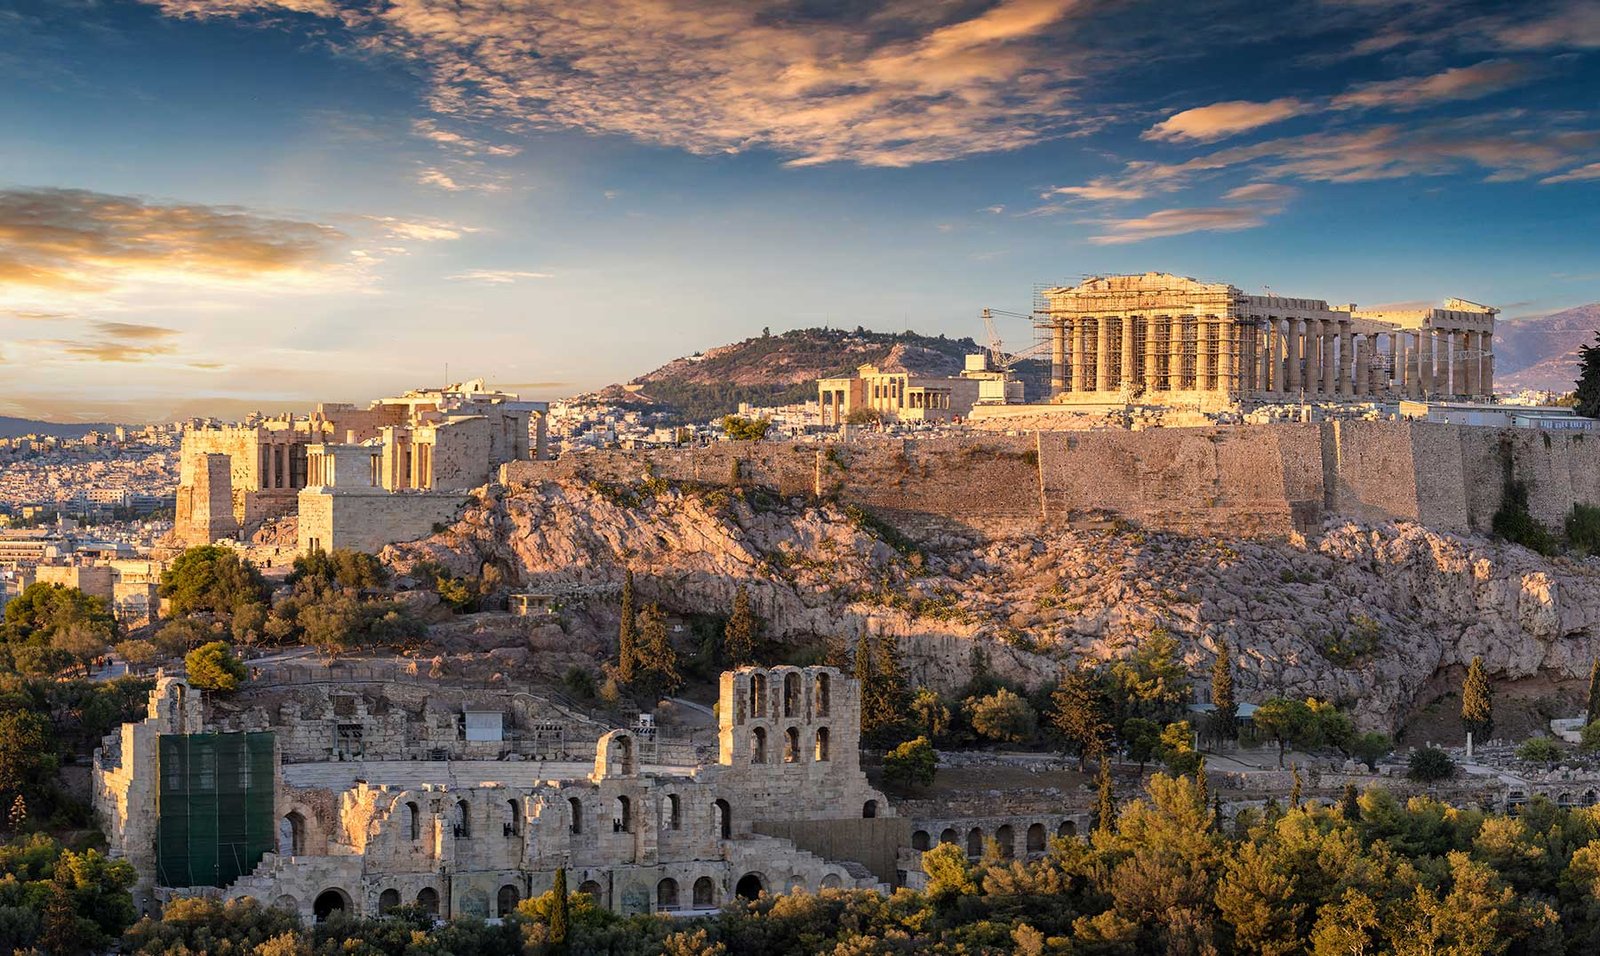 Grecia – Descubre los 23 mejores lugares turísticos y monumentos que ver en Grecia para unas vacaciones inolvidables